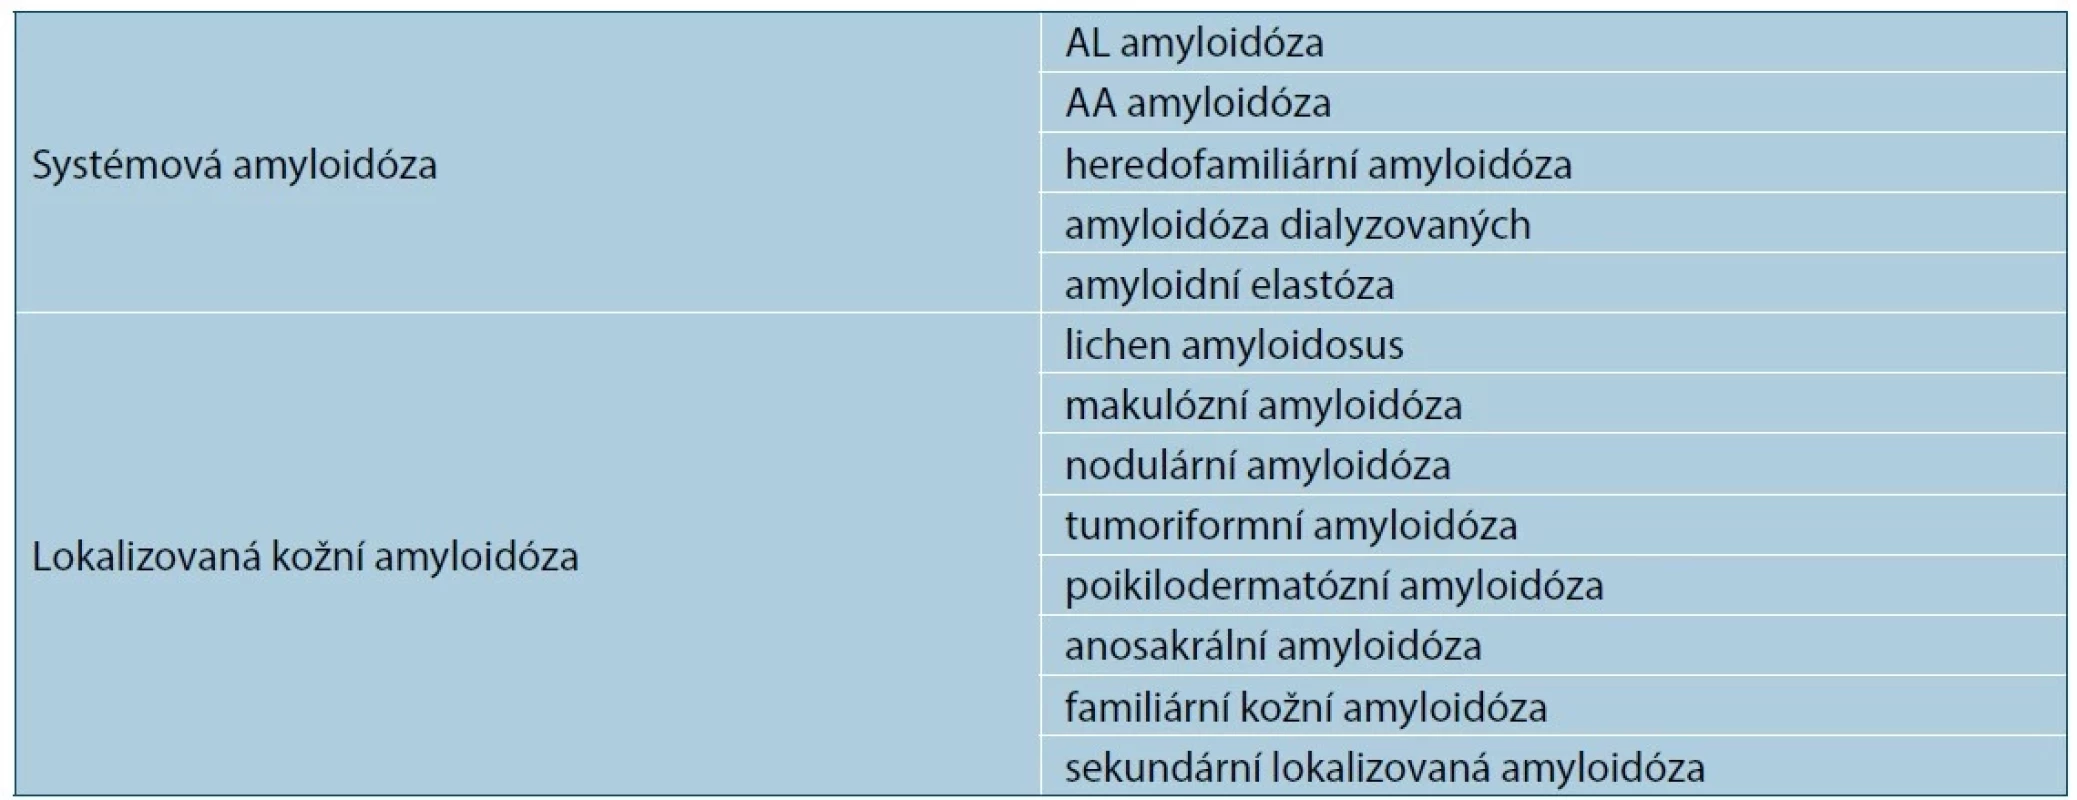 Klasifikace amyloidu s kožním postižením